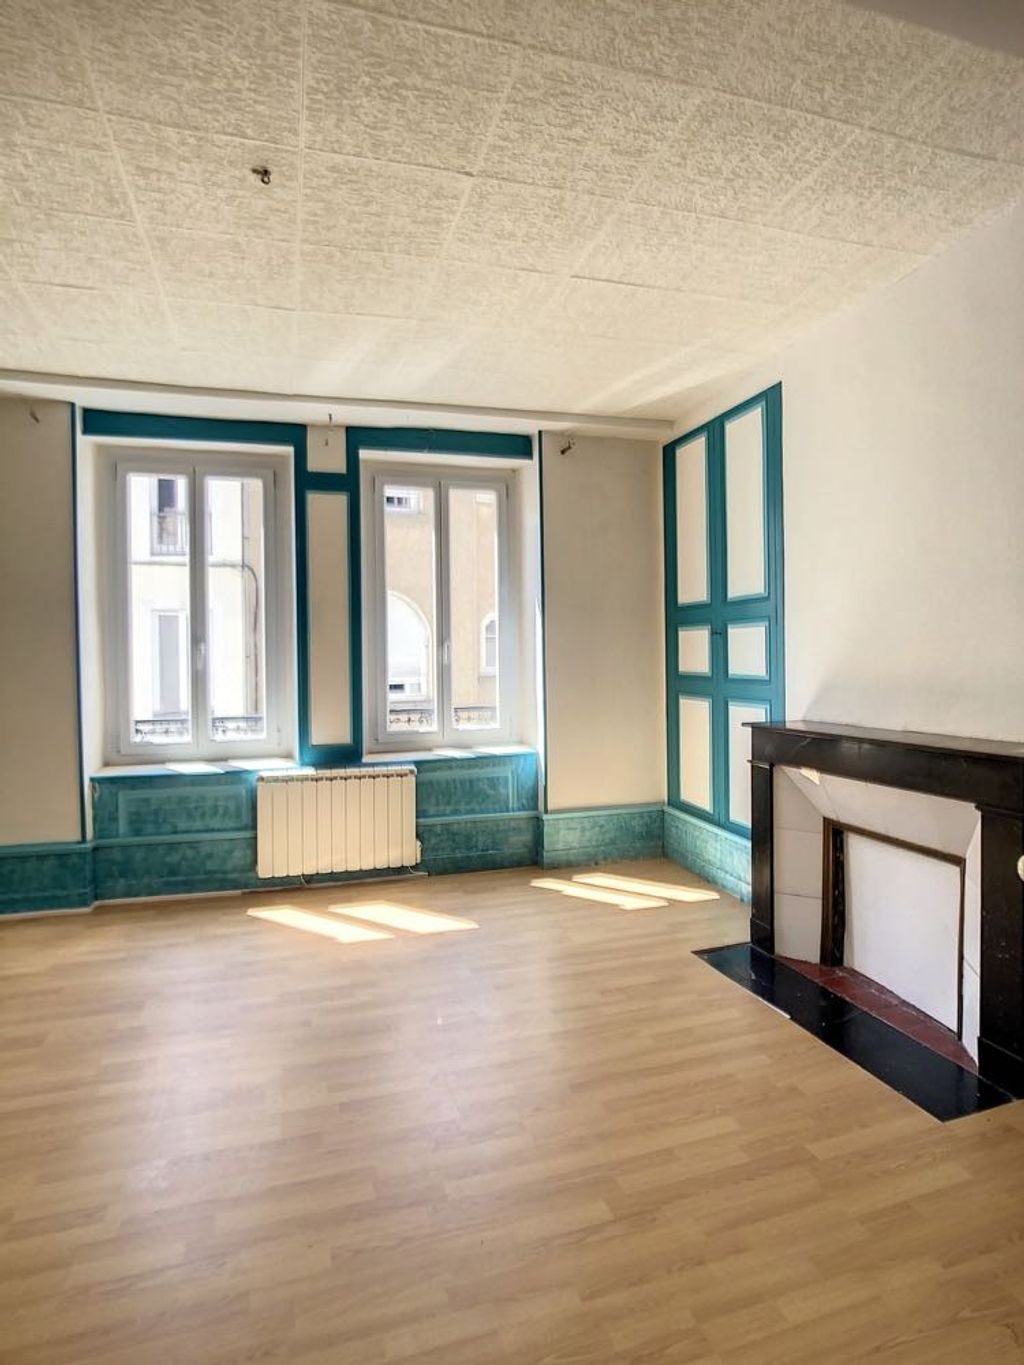 Achat appartement 3 pièces 88 m² - Saint-Jean-de-Losne